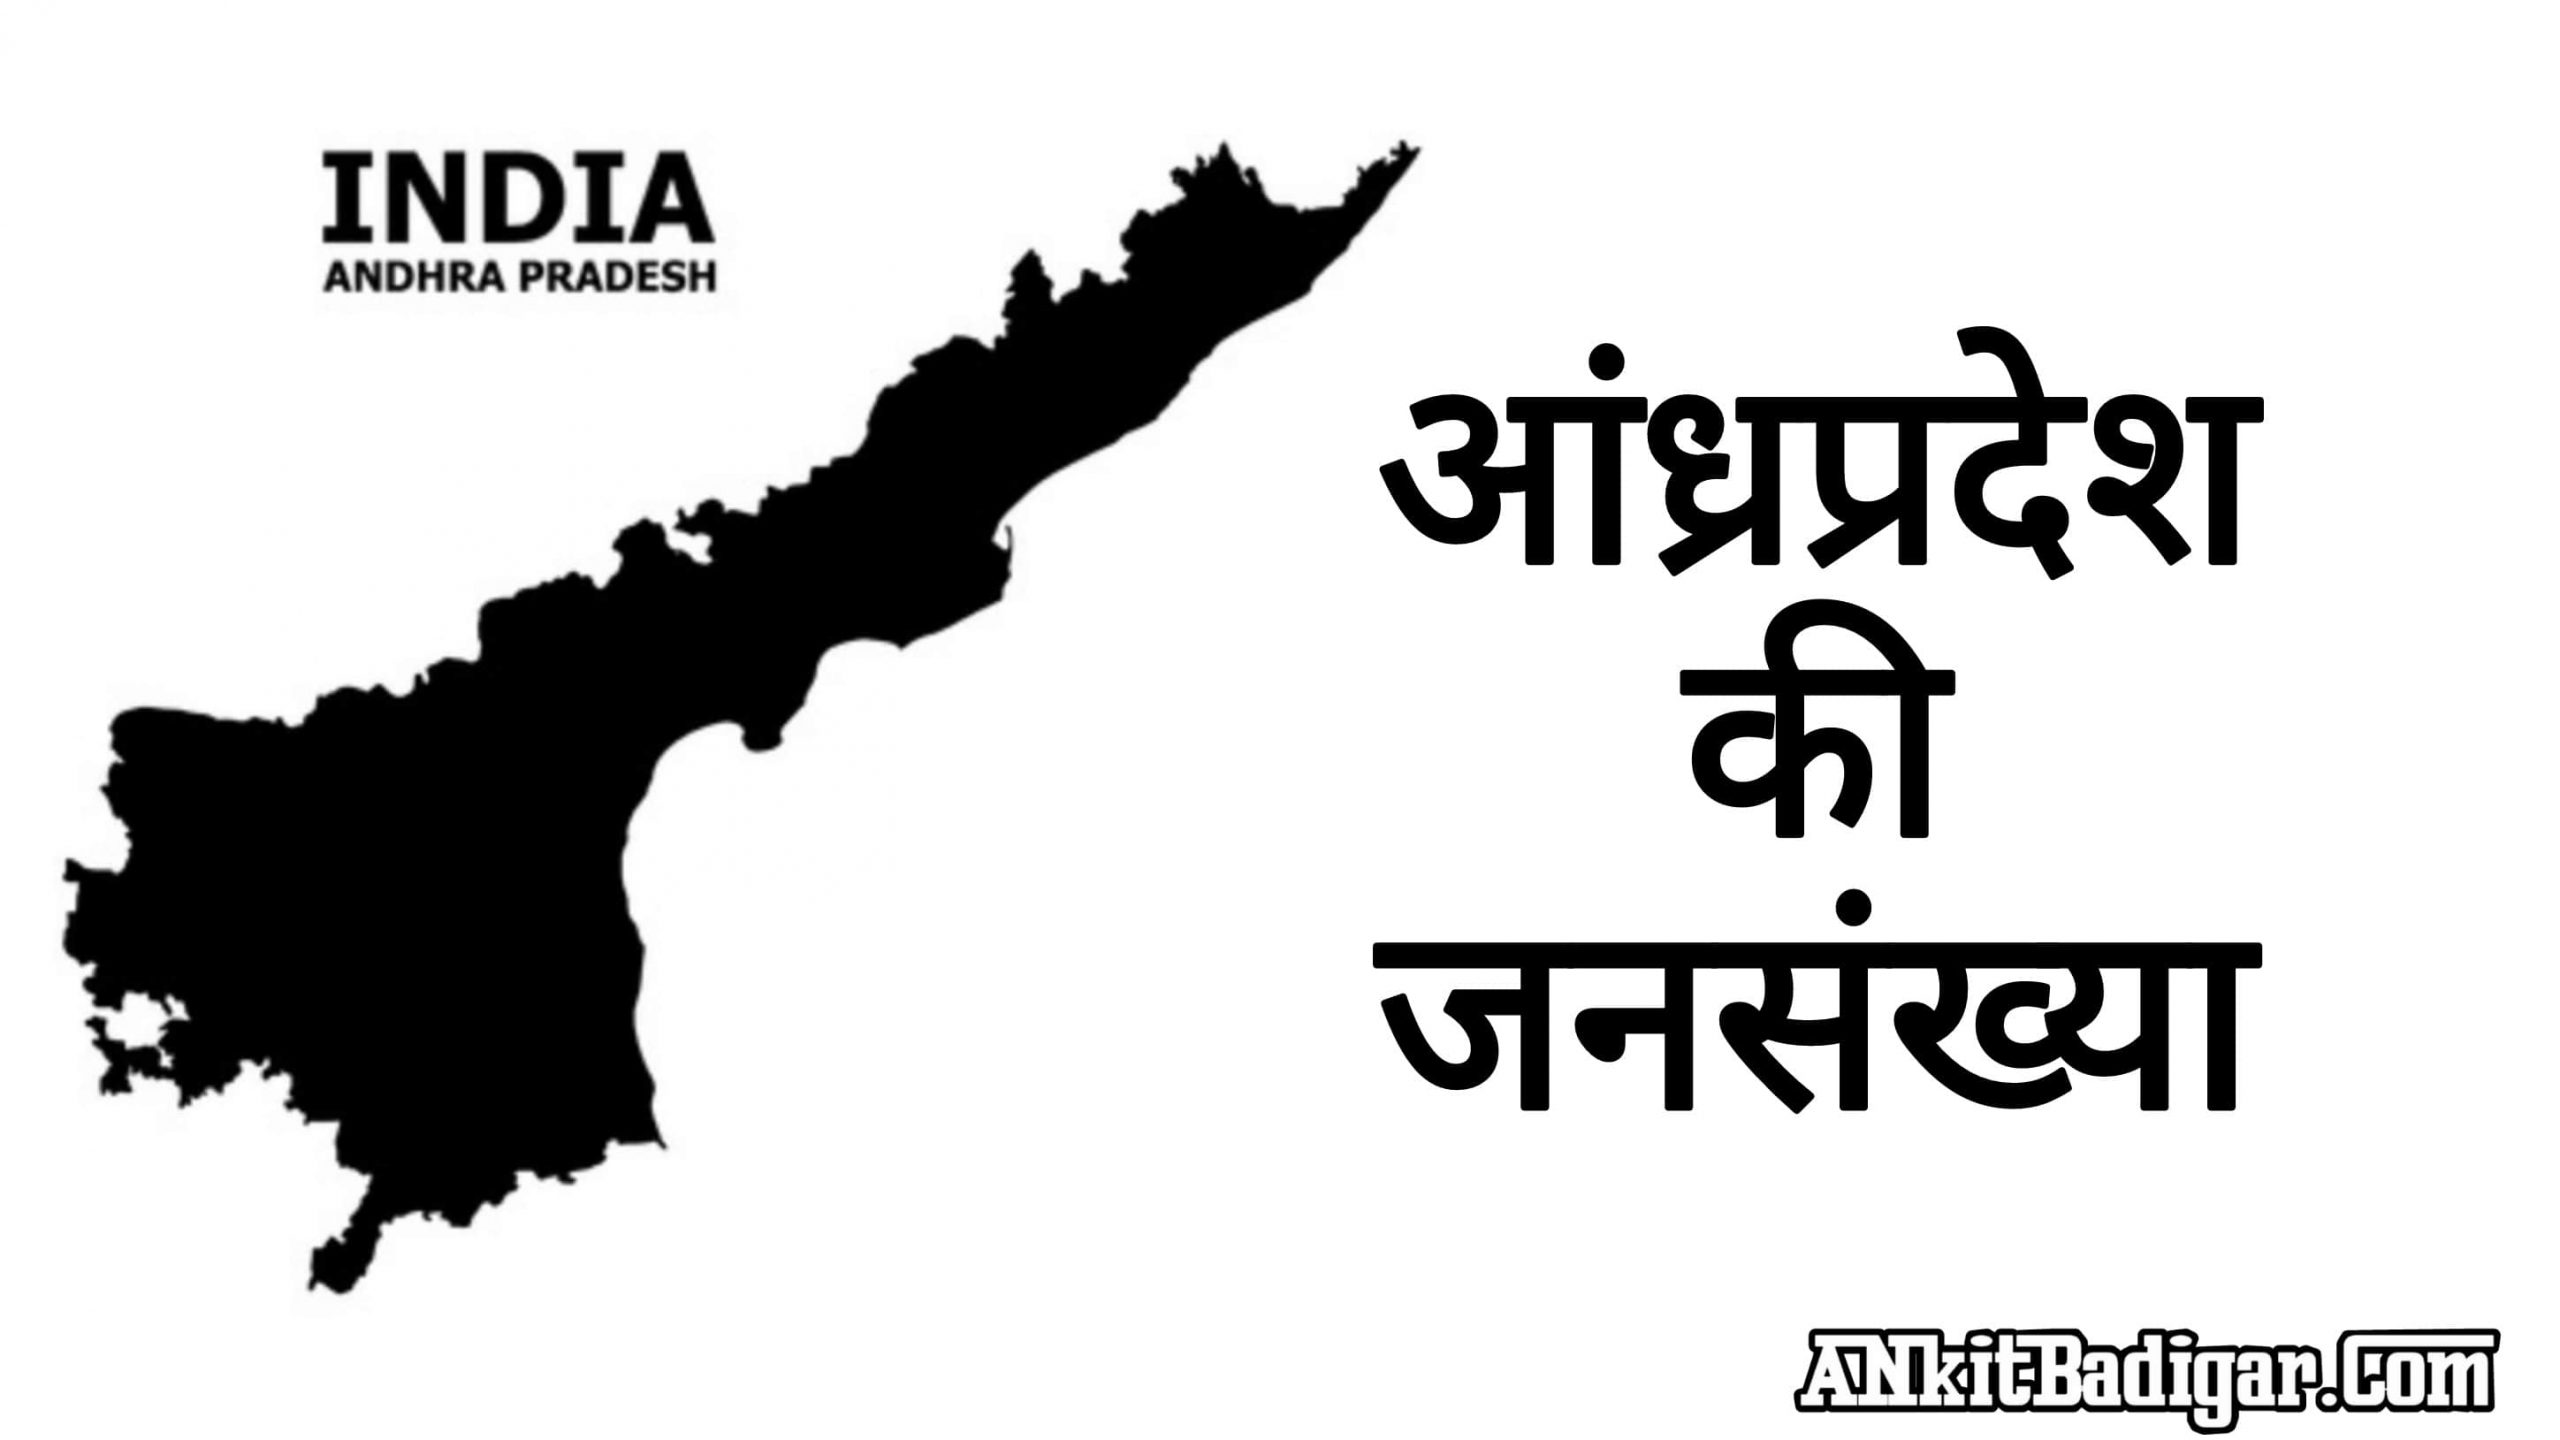 Andhra Pradesh Ki Jansankhya kitni hai